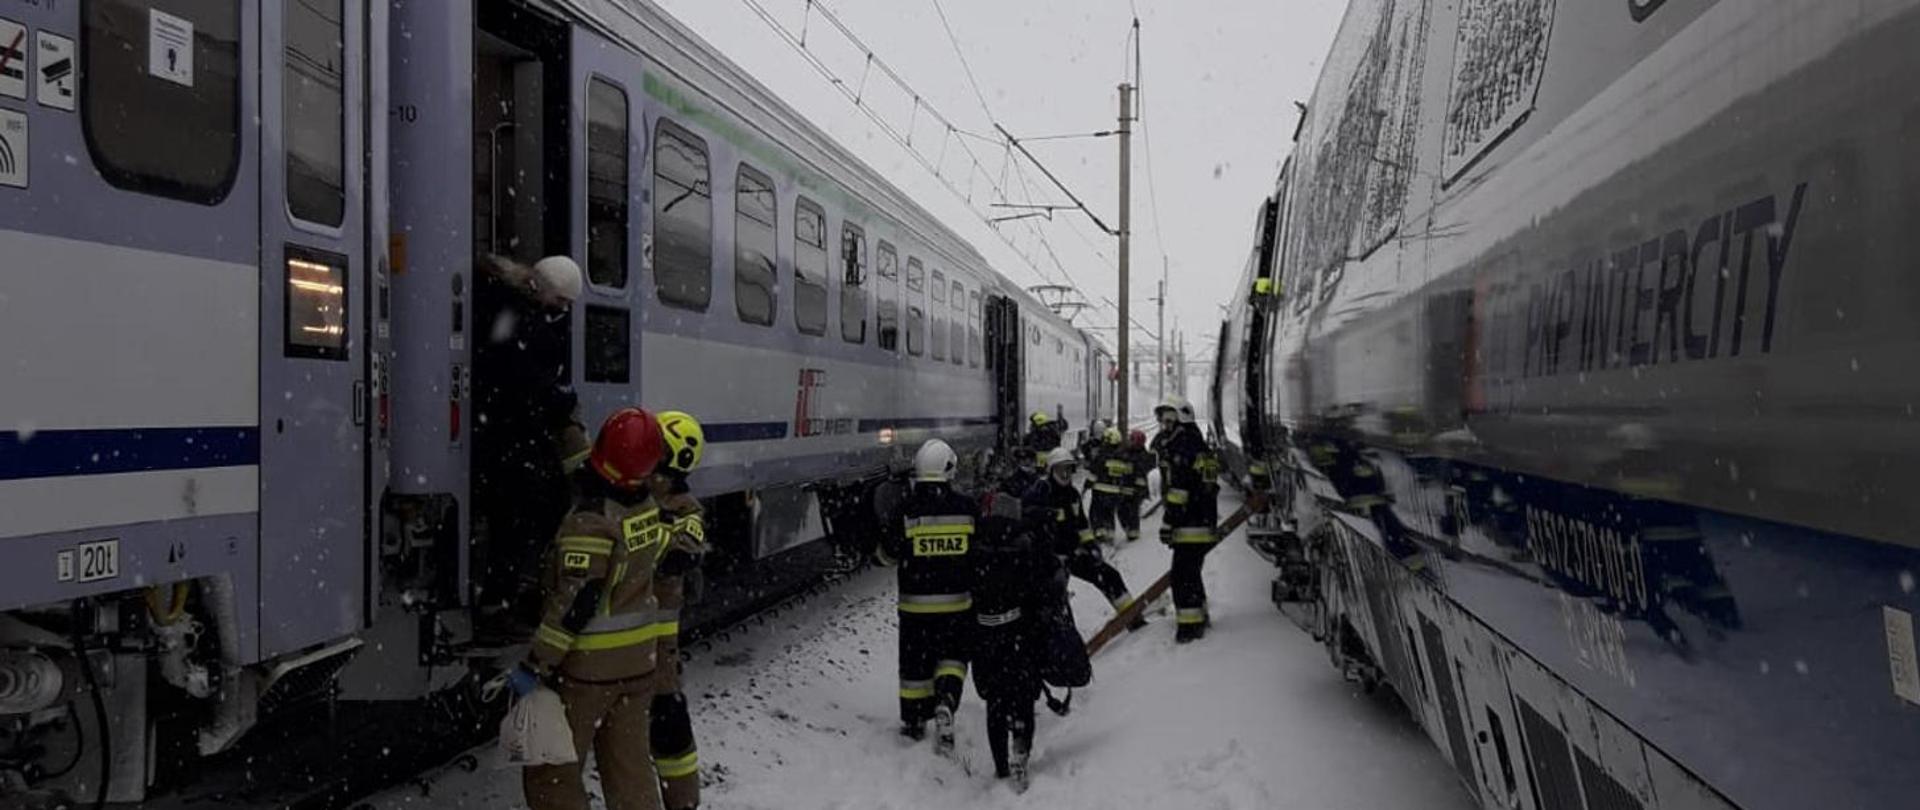 Na zdjęciu widać dwa pociągi, między nimi strażacy przeprowadzają pasażerów z jednego do drugiego